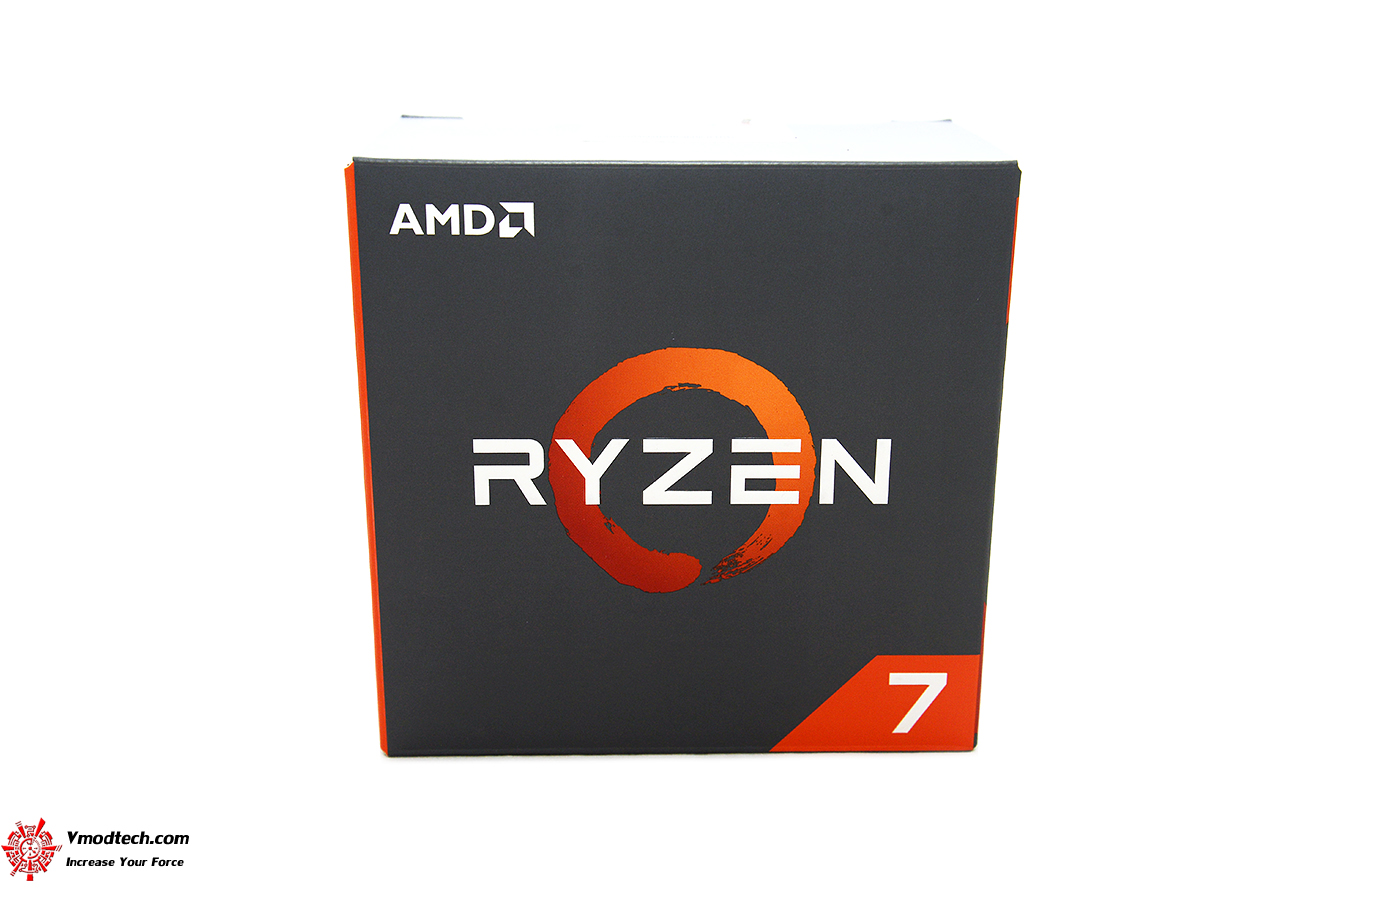 dsc 59322 AMD RYZEN 7 1800X REVIEW 